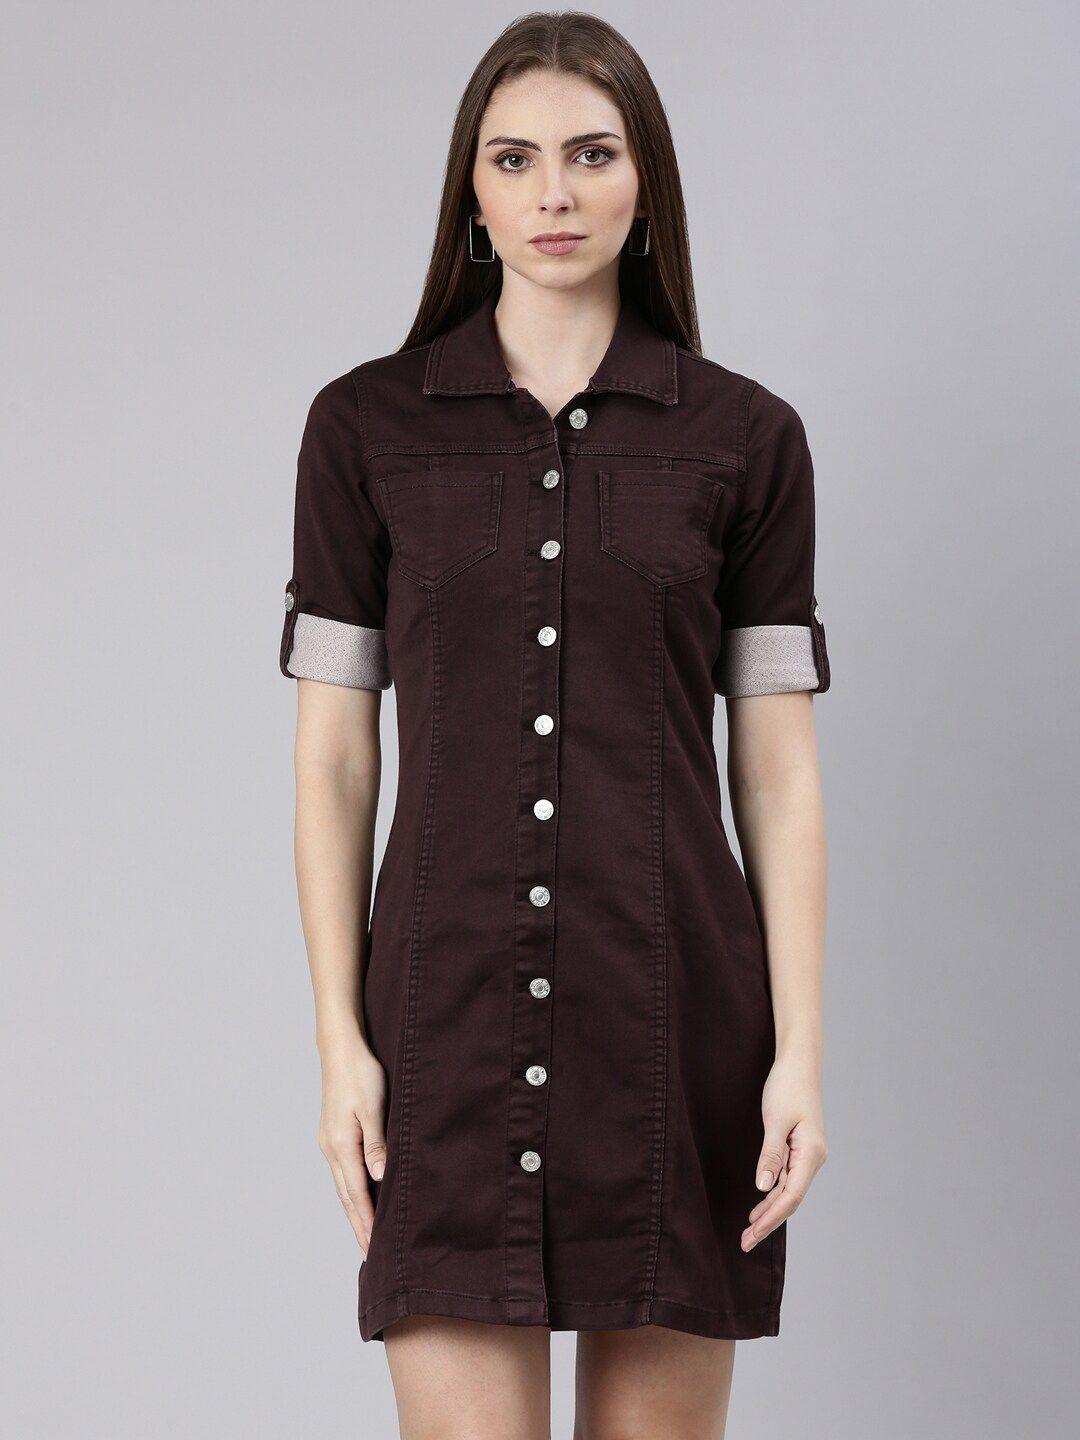 showoff shirt collar roll up sleeve cotton shirt dress